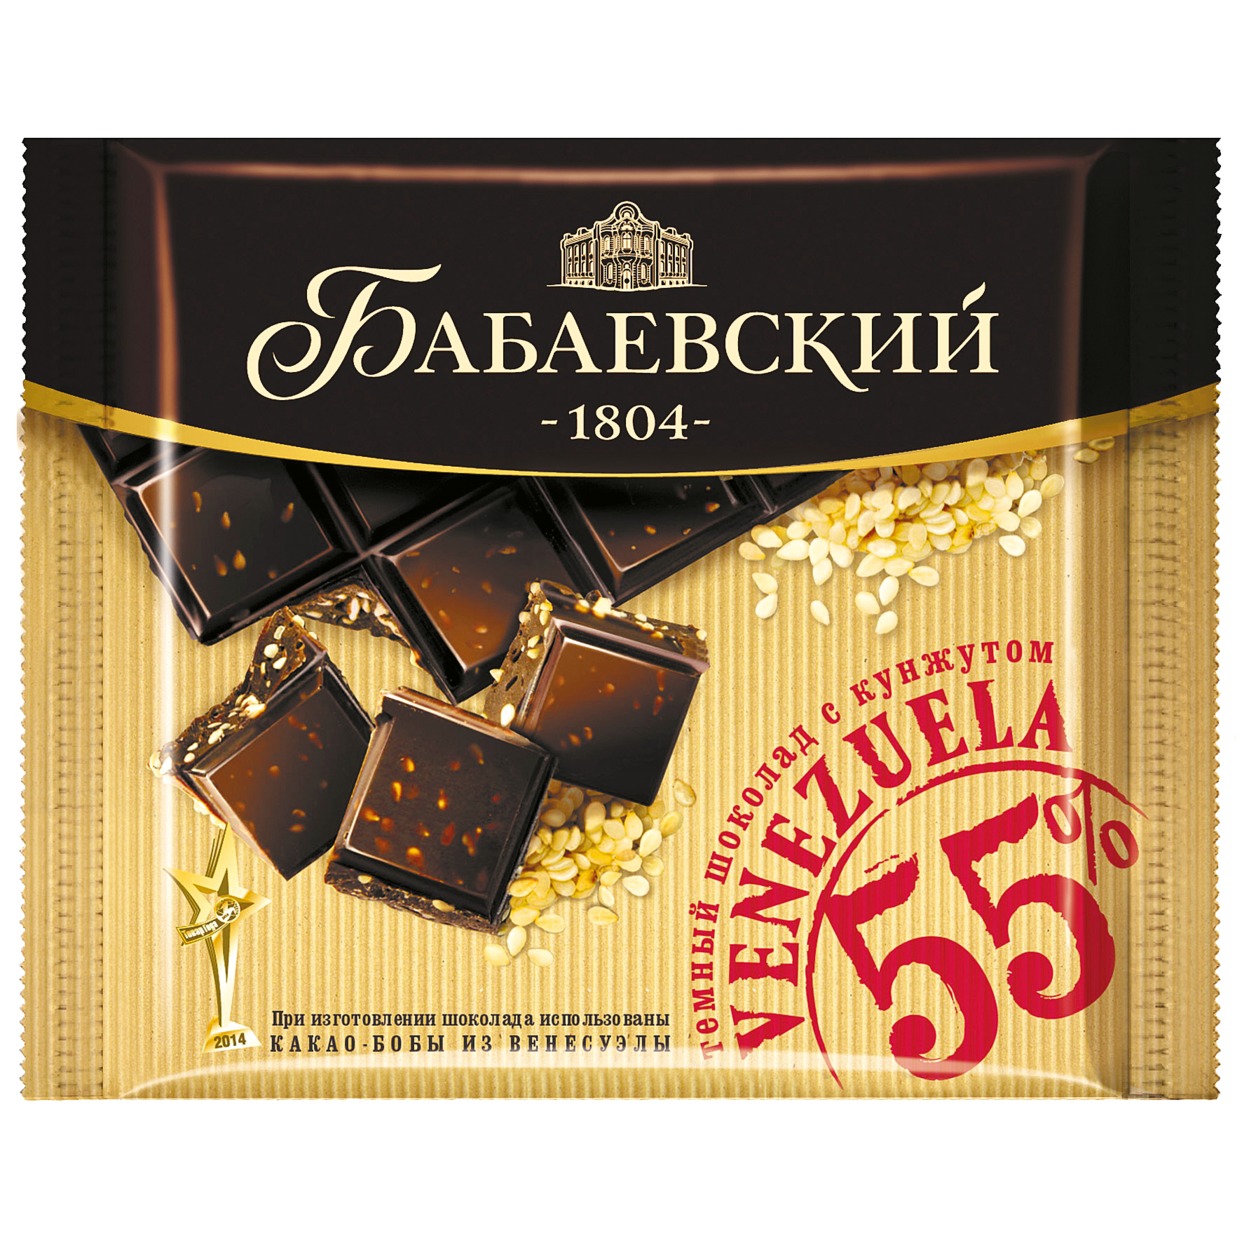 Шоколад Бабаевский, темный, с кунжутом, 90 г по акции в Пятерочке